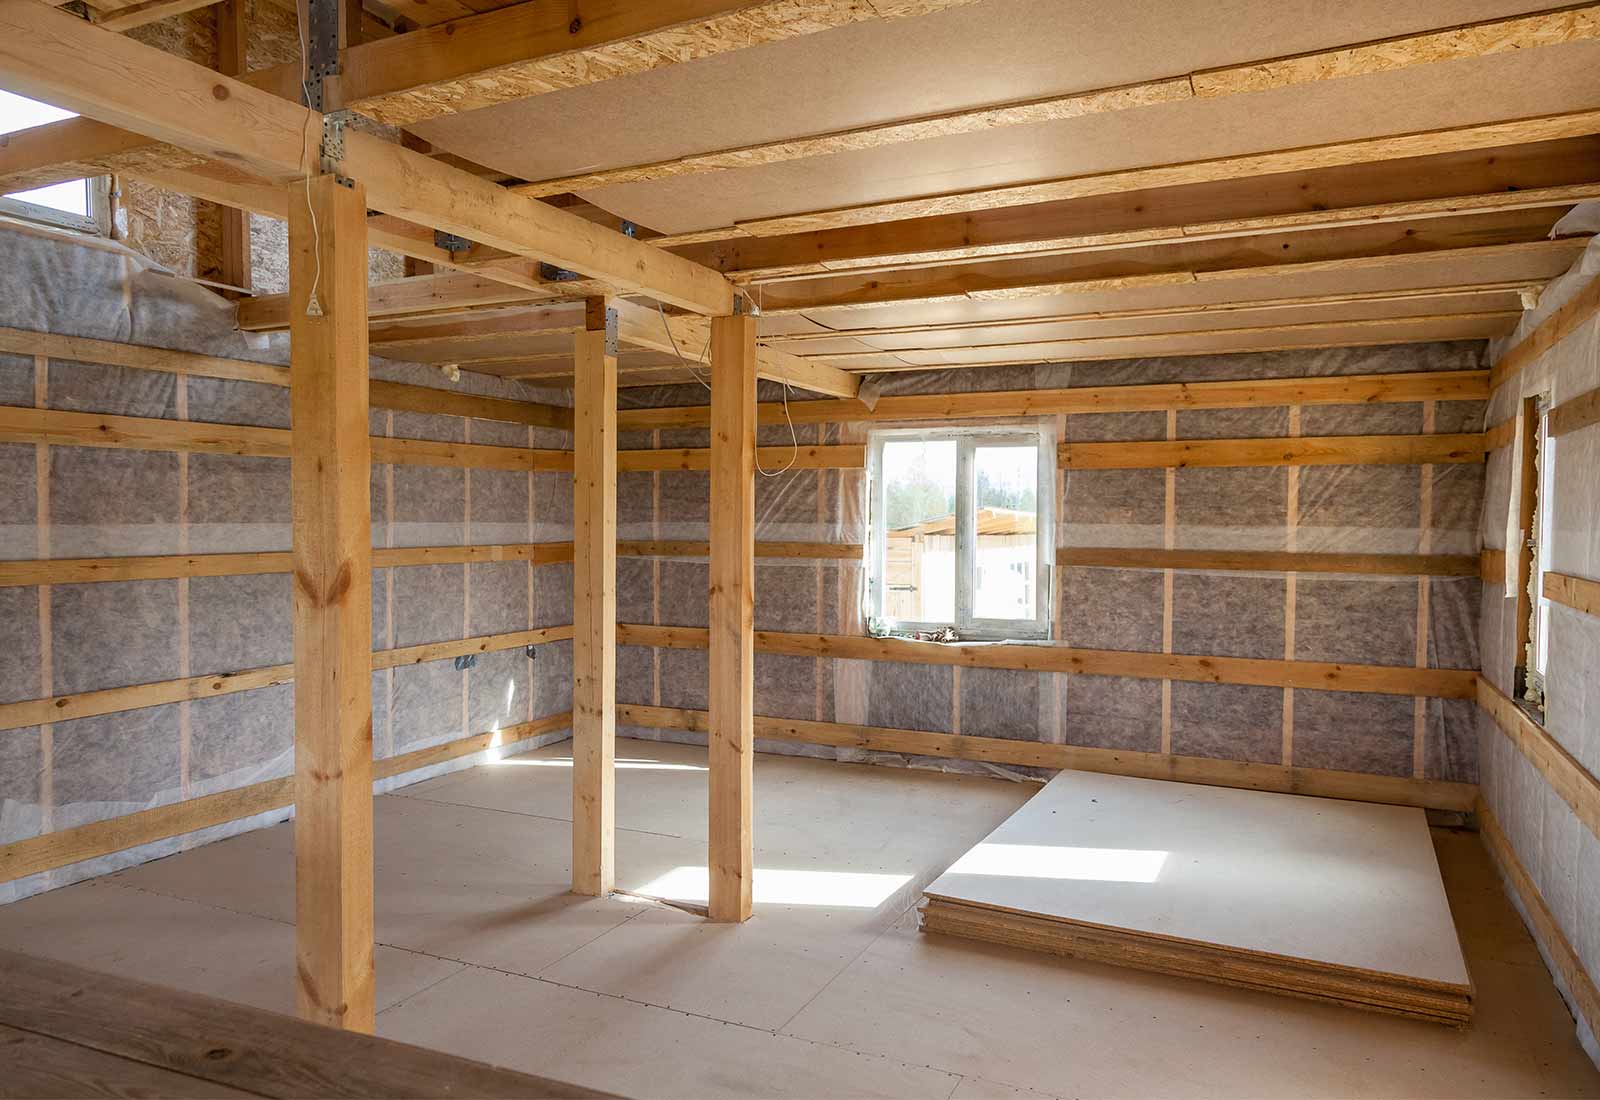 Combien coûte l'isolation du plafond ?